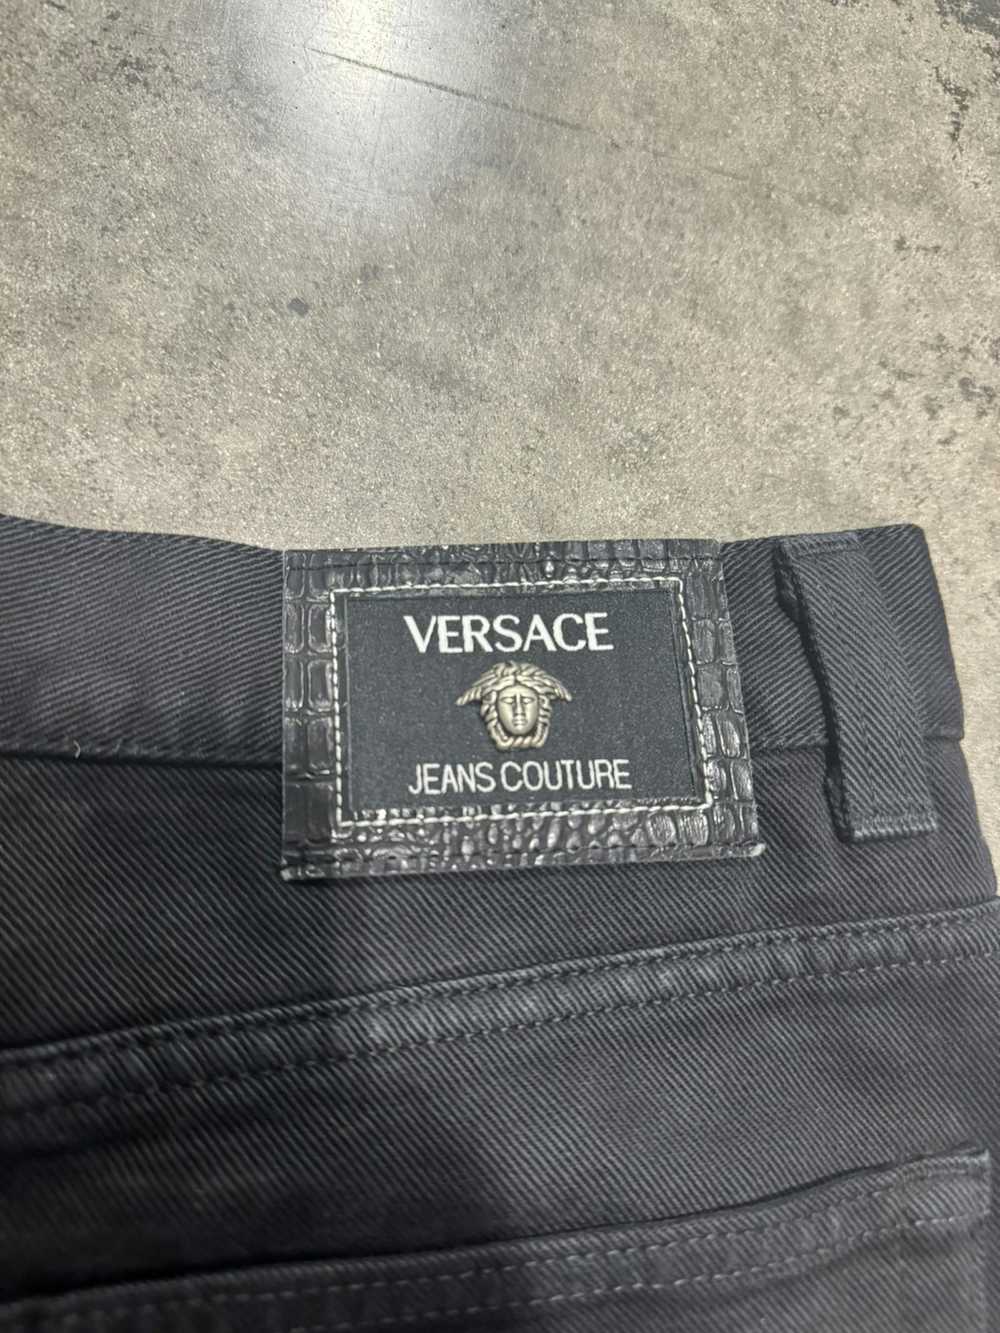 Versace Jeans Couture × Vintage Vintage Versace J… - image 2